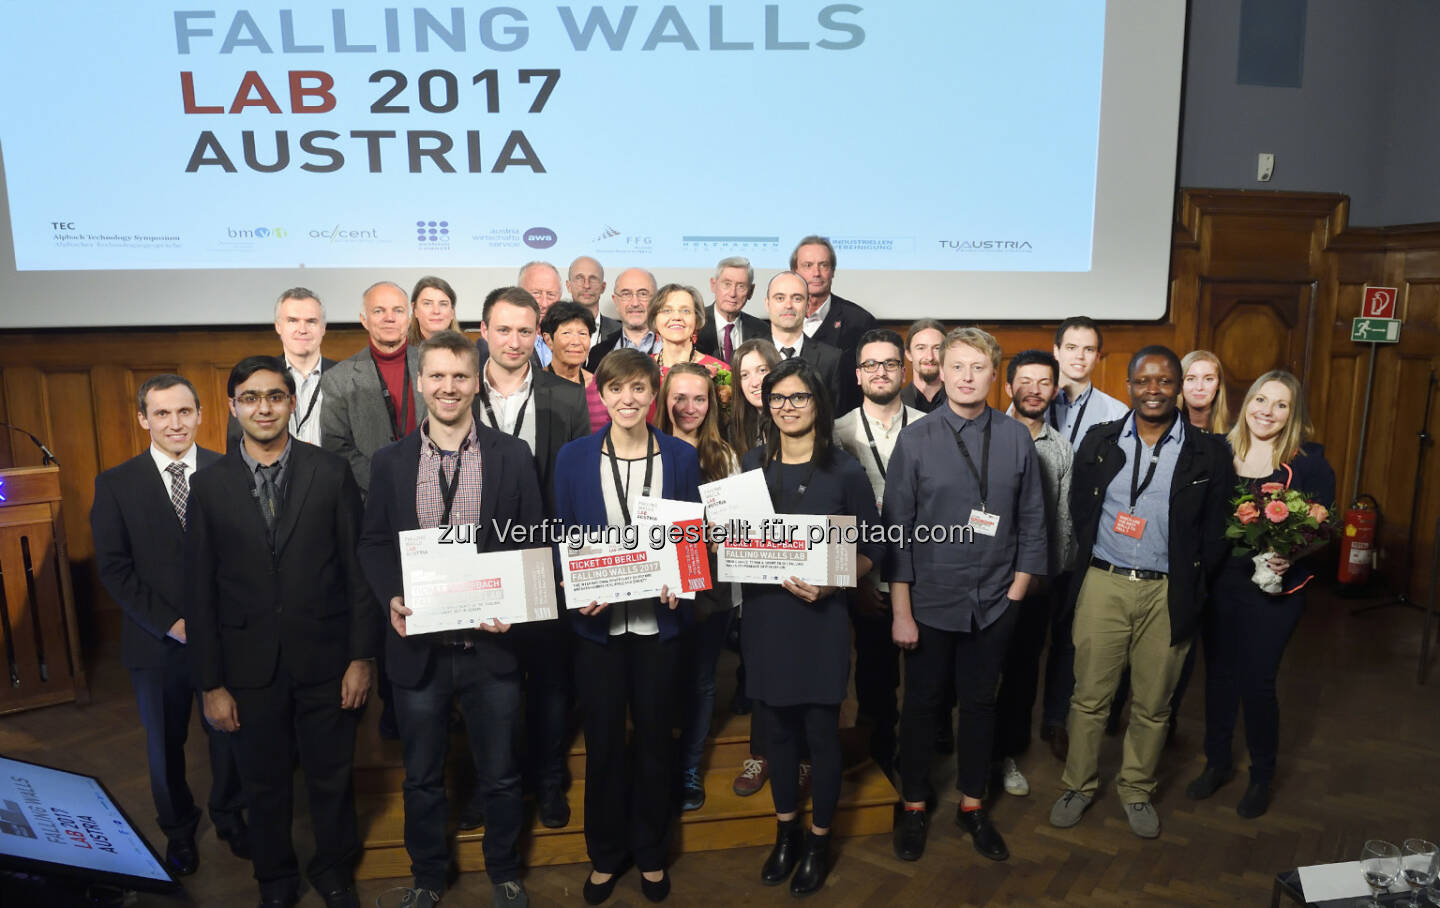 TeilnehmerInnen und Jury des Falling Walls Lab Austria 2017 - Alpbacher Technologiegespräche: Falling Walls Lab Austria: 14 Talente aus acht Nationen präsentierten ihre innovativen Ideen (Fotocredit: AIT / Johannes Zinner)